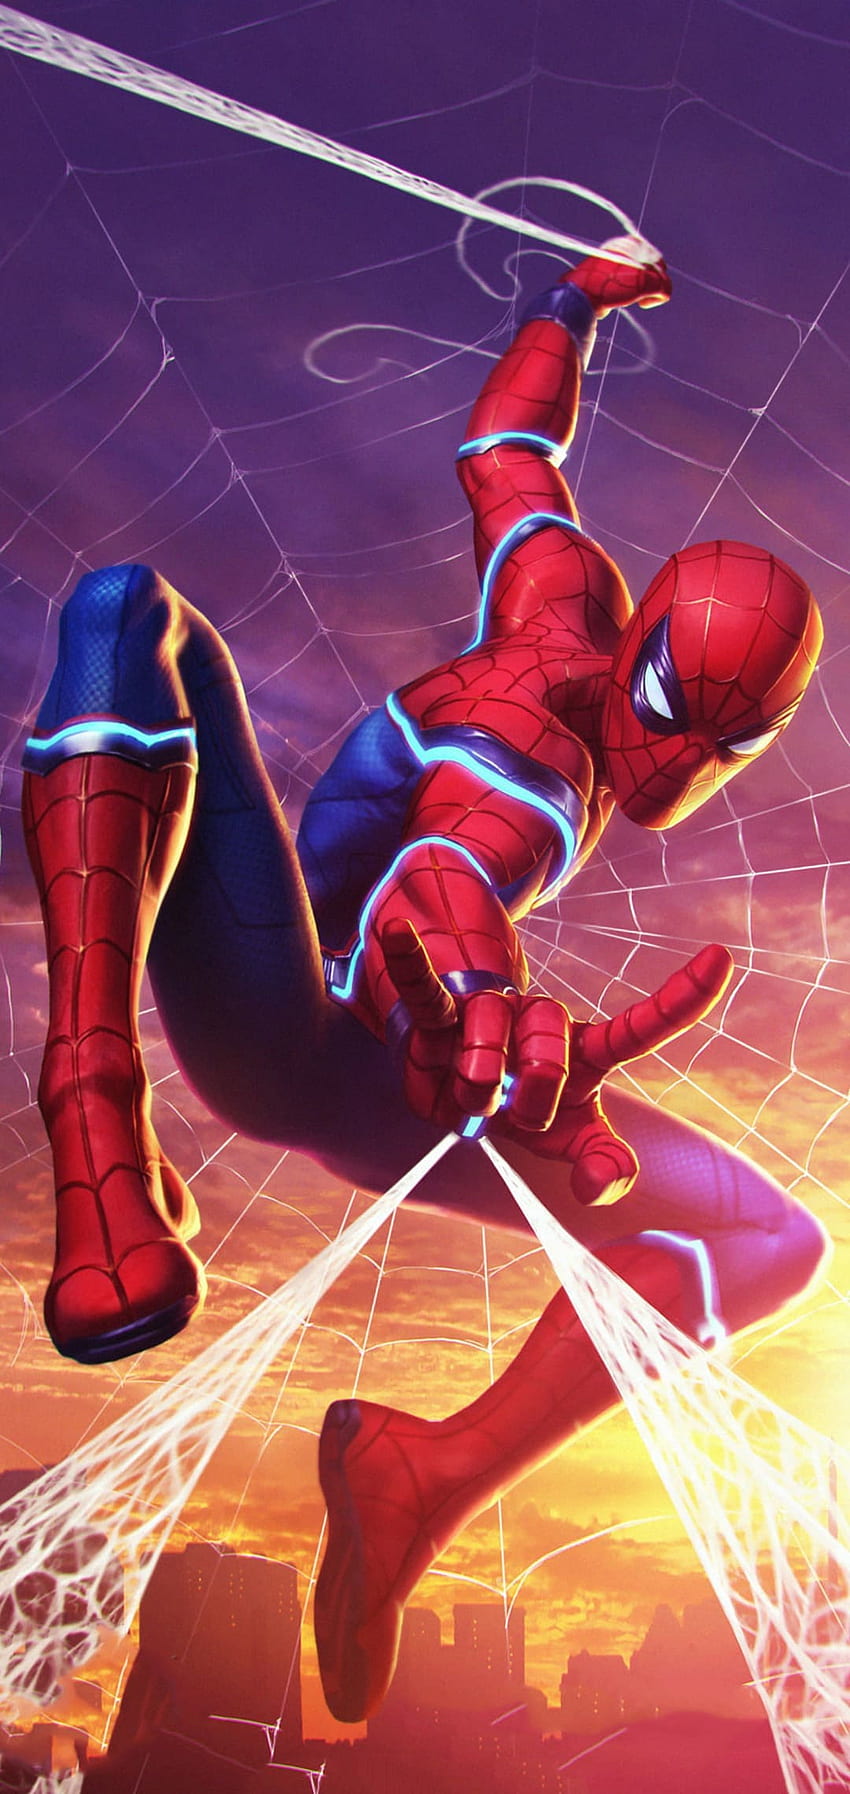 Spider Man - Latar Belakang Ultra Spiderman Terbaik [ ], Spider Man Untuk Seluler wallpaper ponsel HD